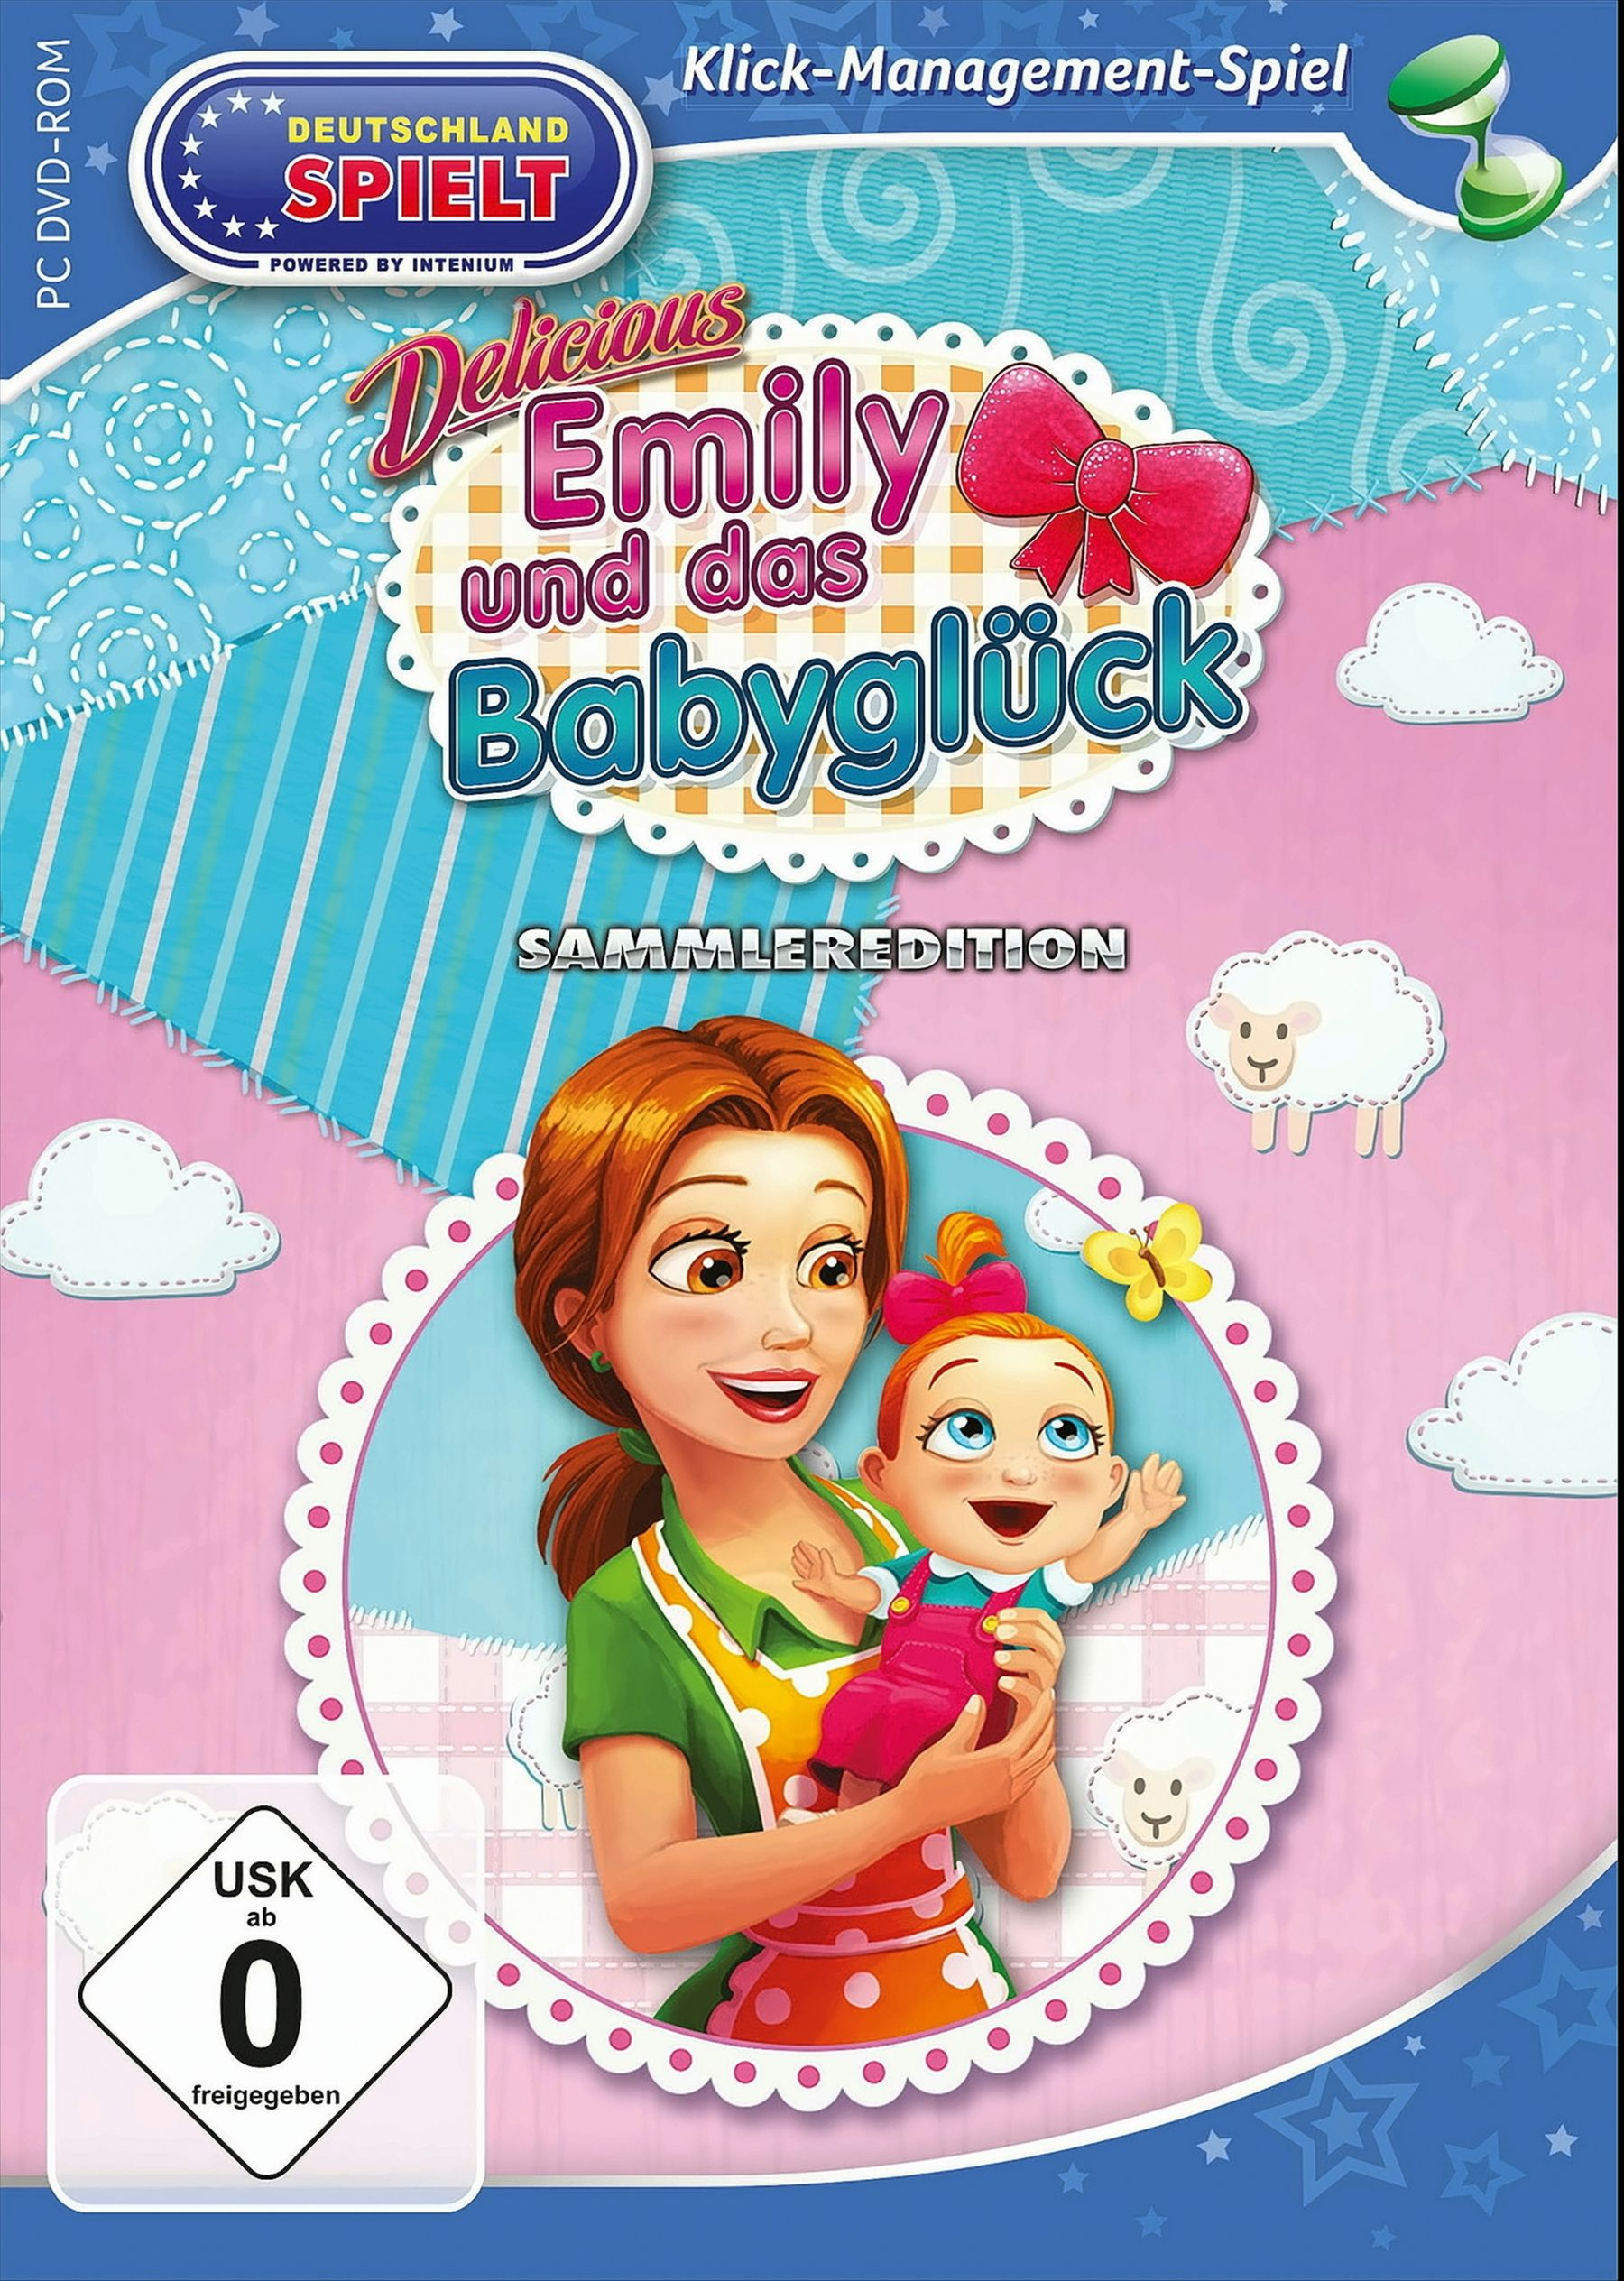 und Emily Sammleredition das Babyglück [PC] - Delicious: -